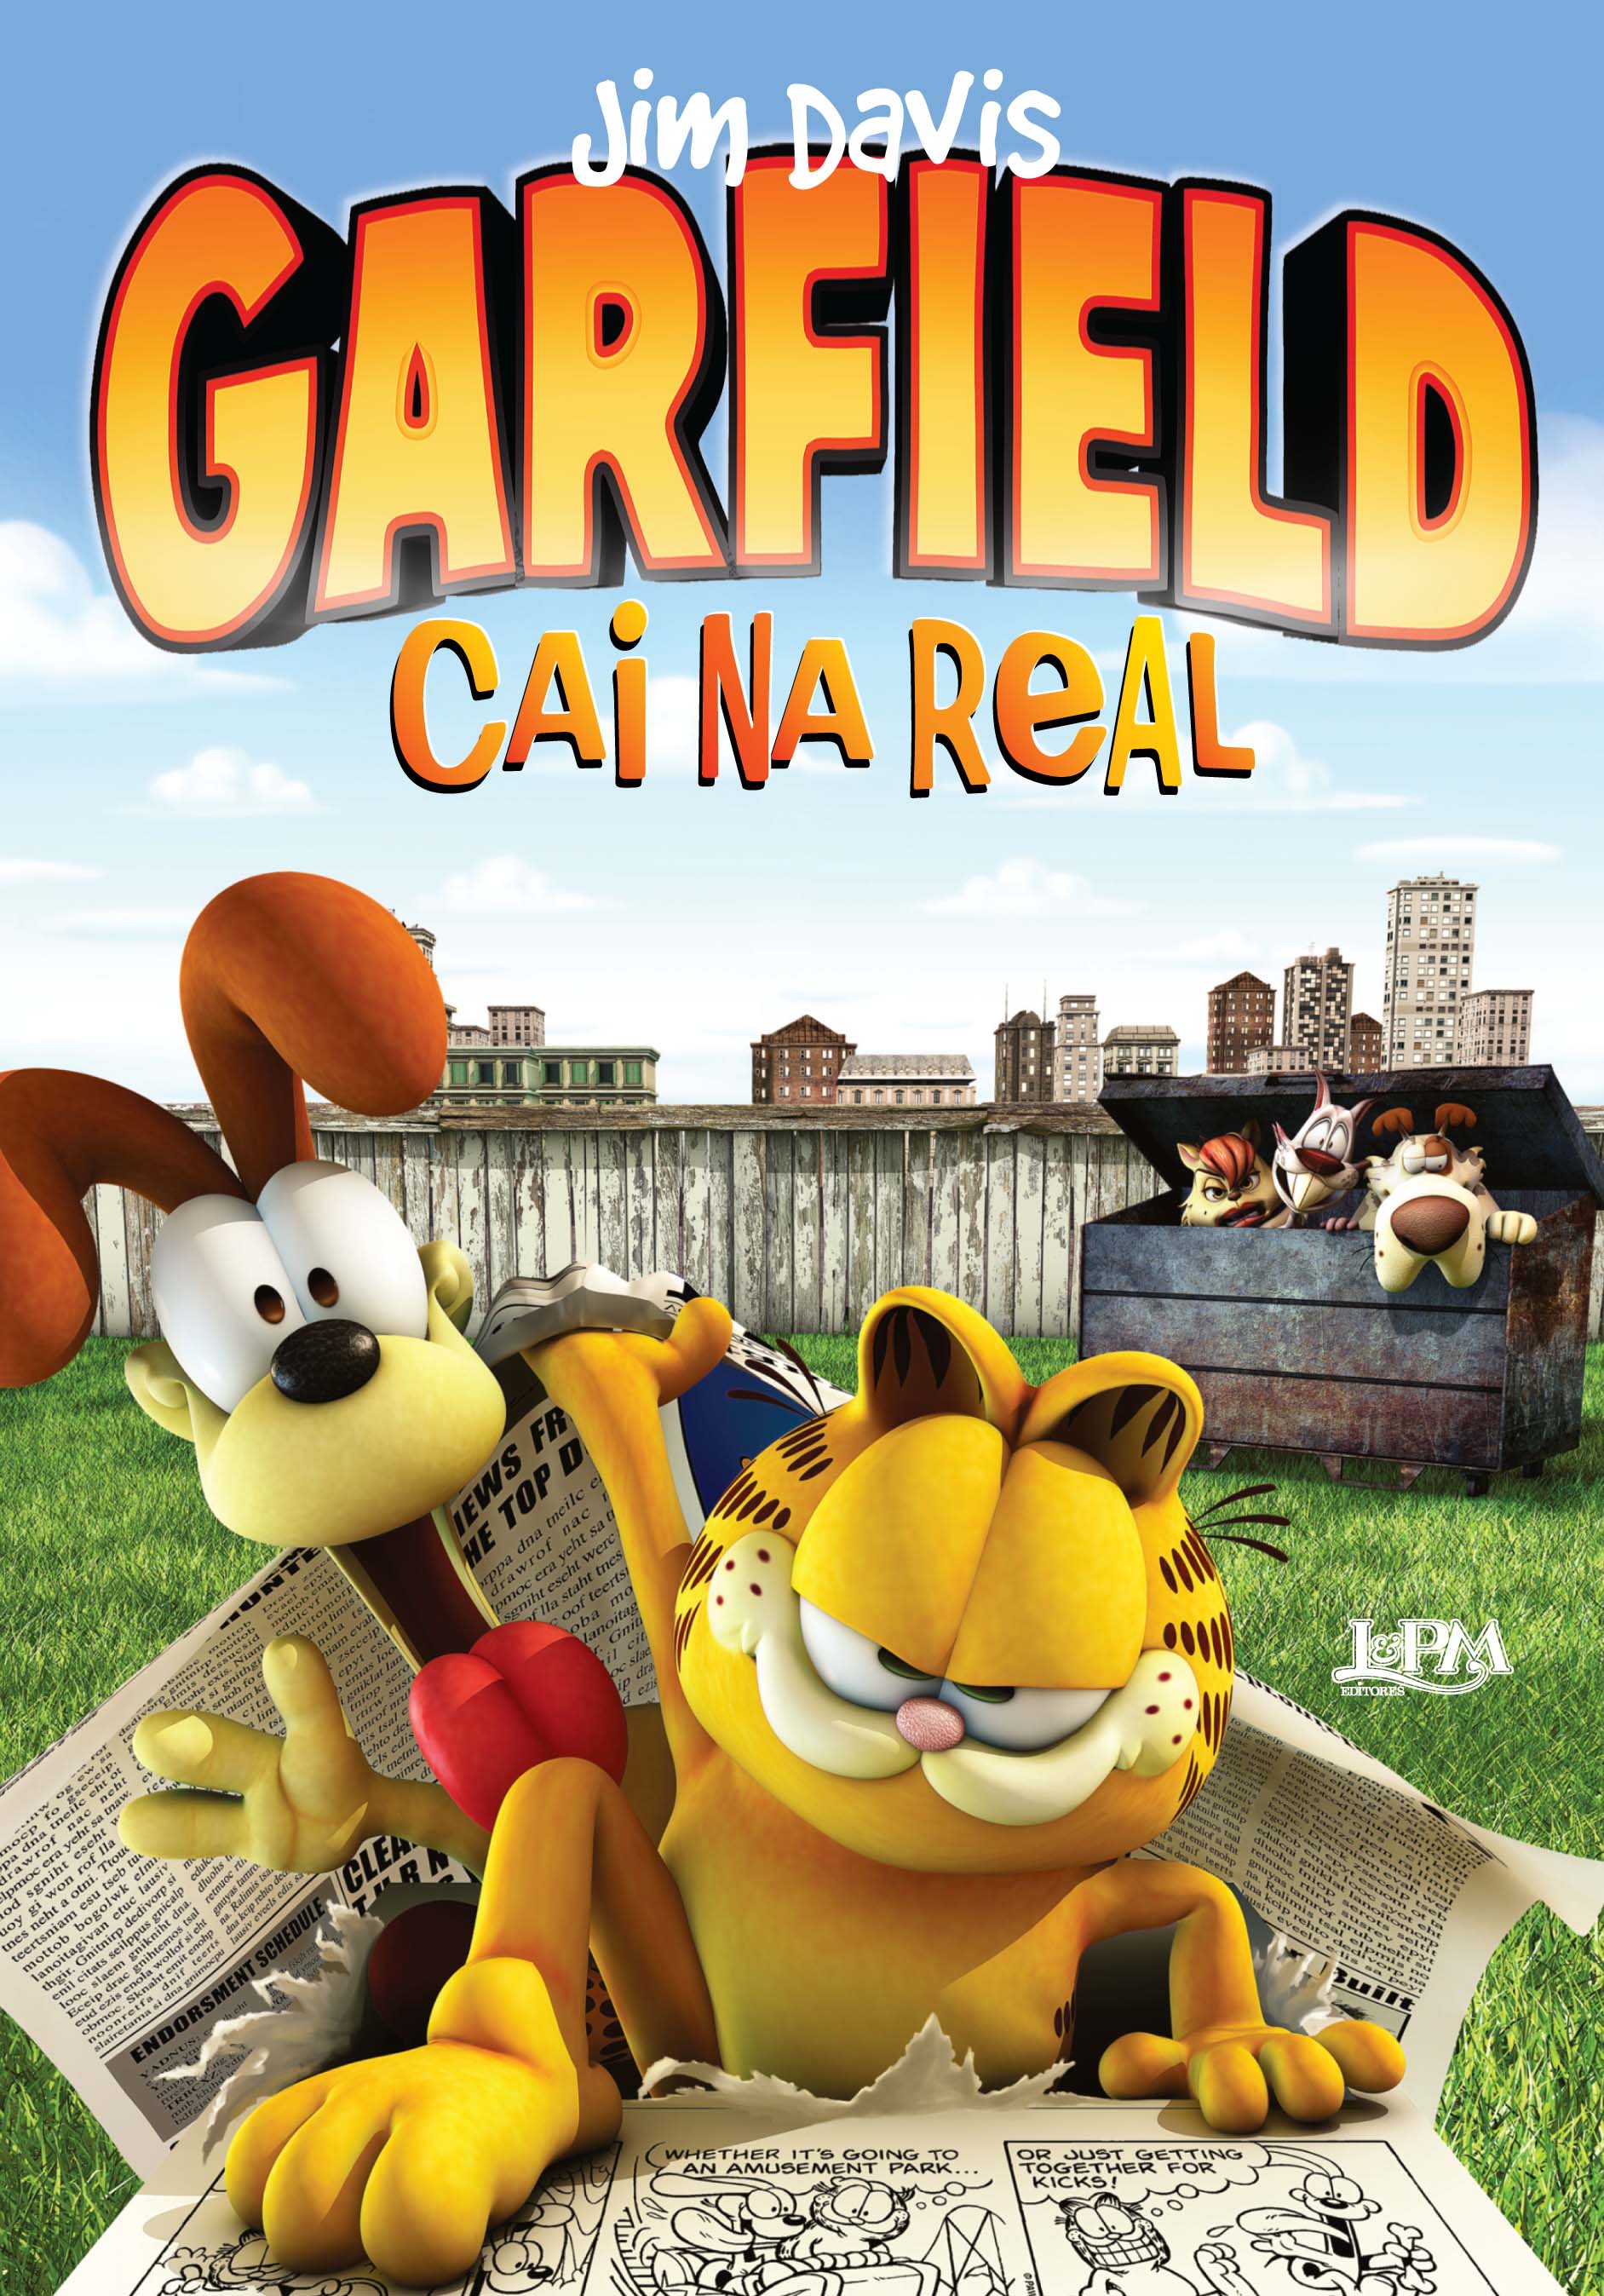 Você nunca soube a verdade sobre o Jon em Garfield #garfield